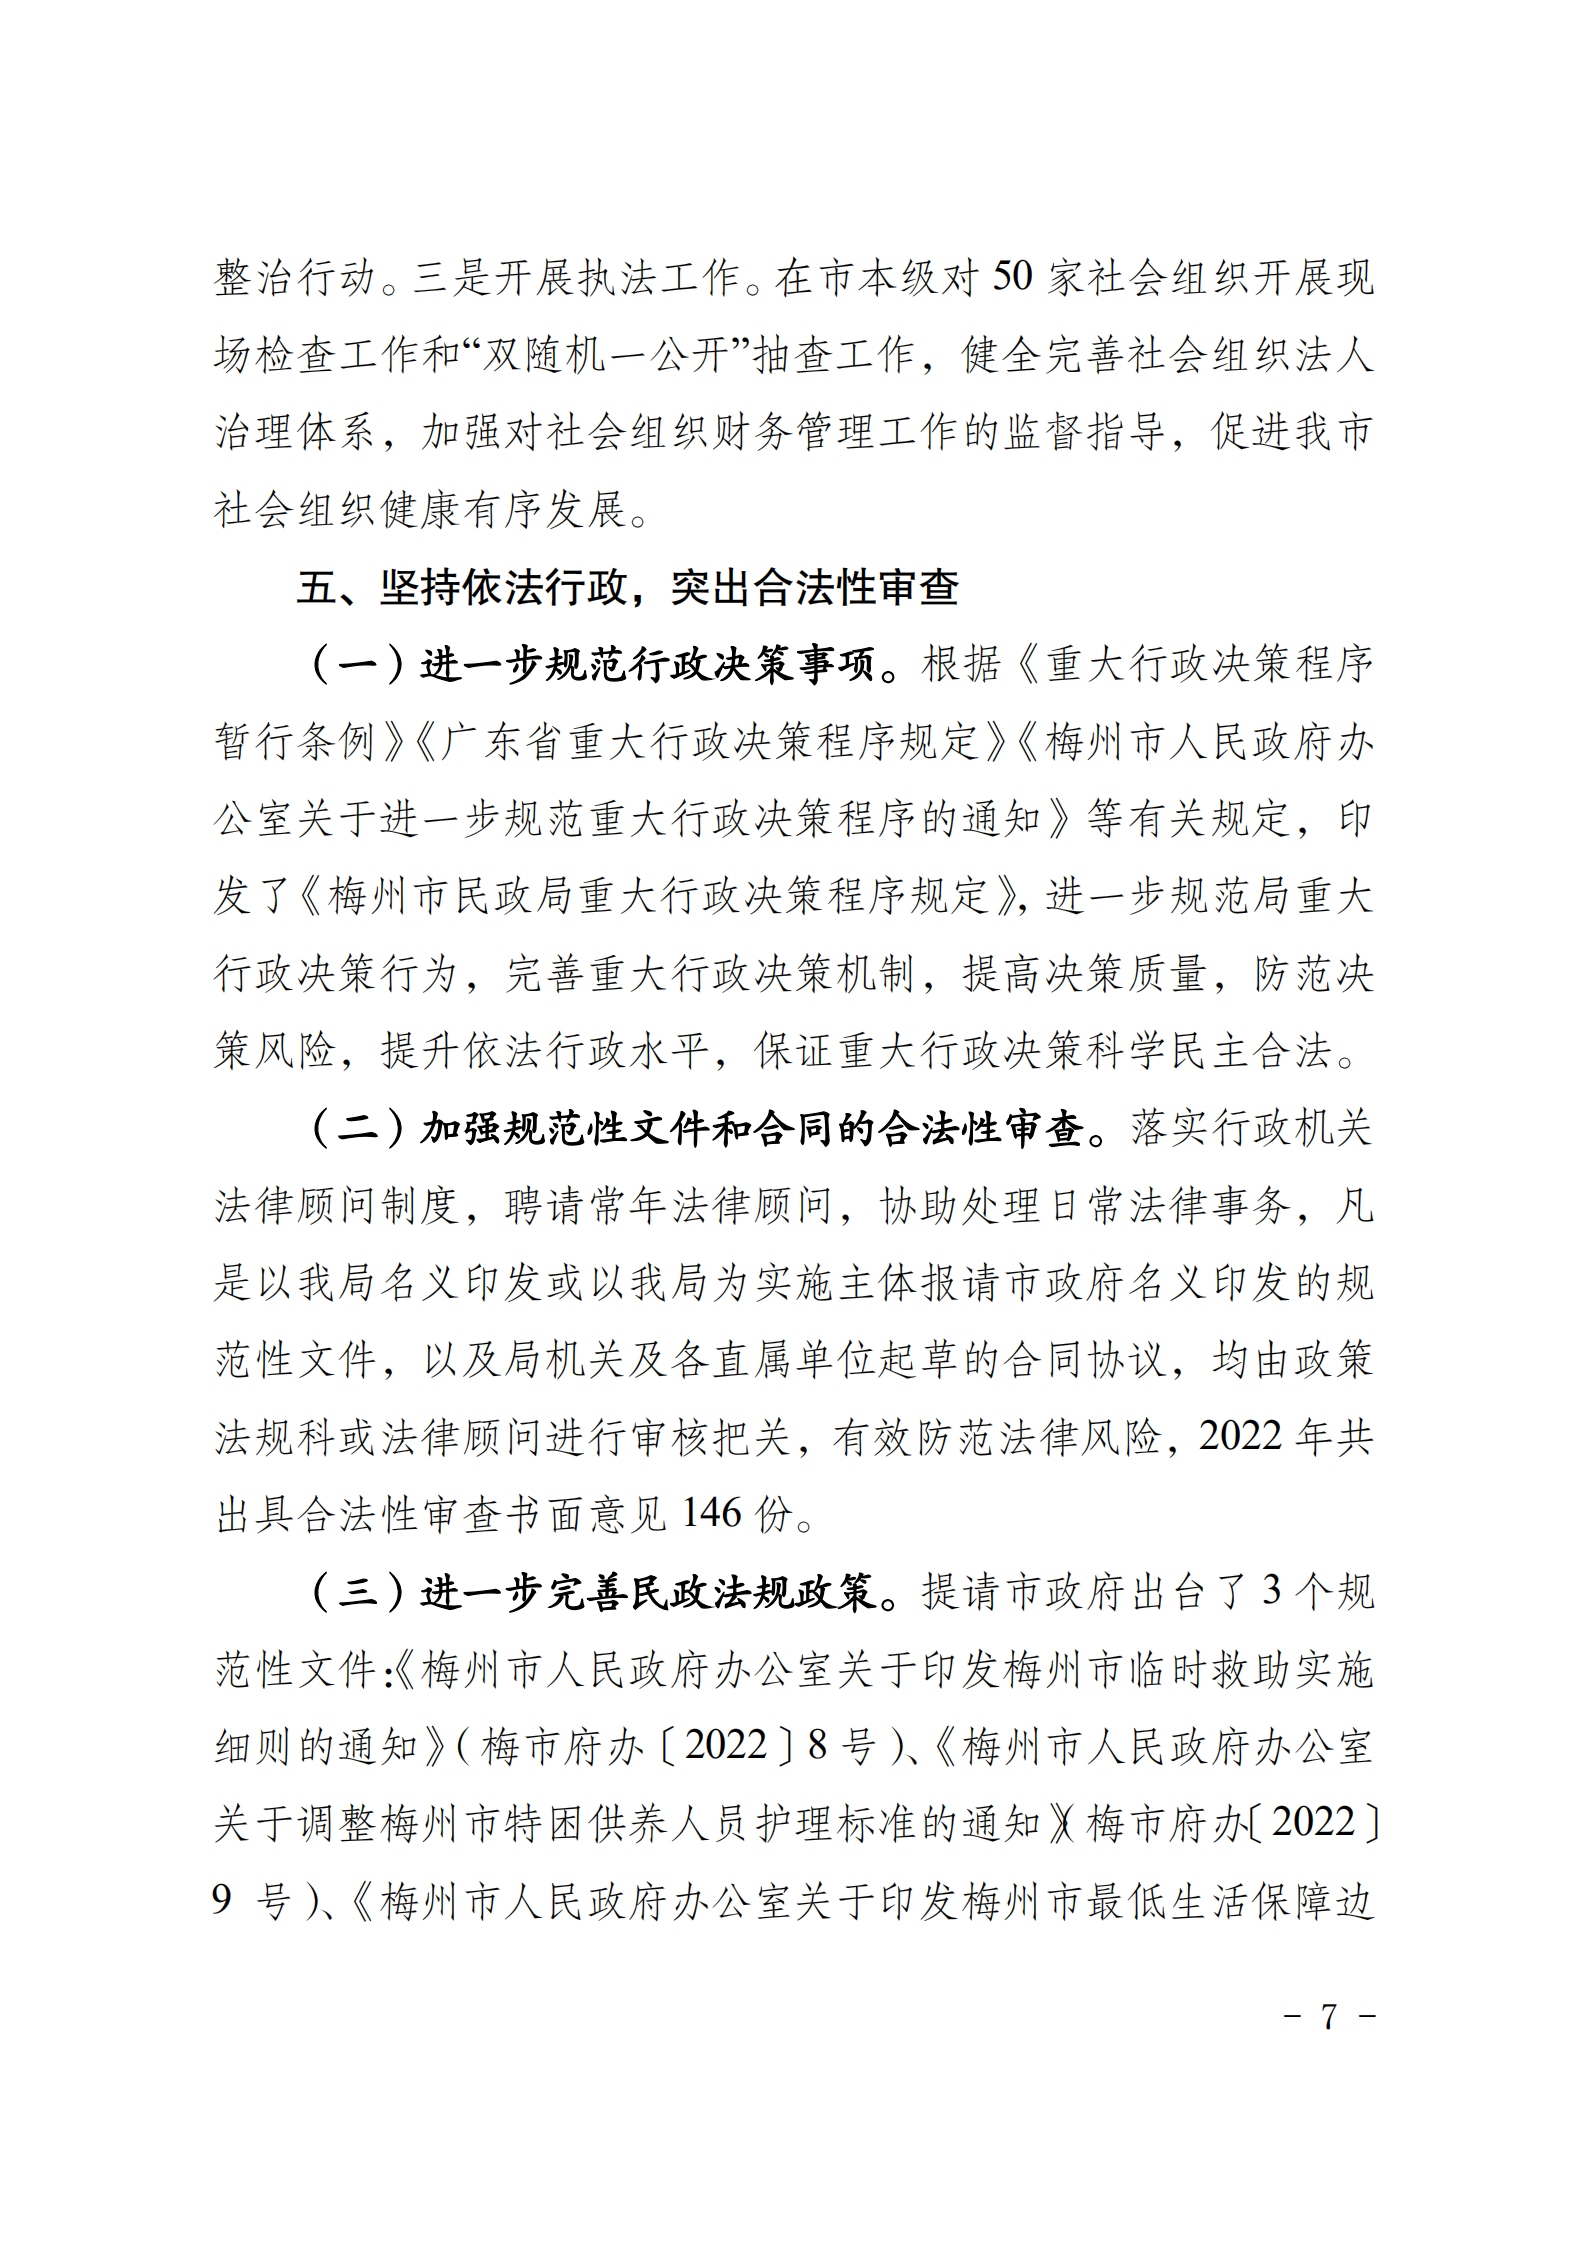 梅州市民政局关于2022年度法治政府建设情况的报告_06.png